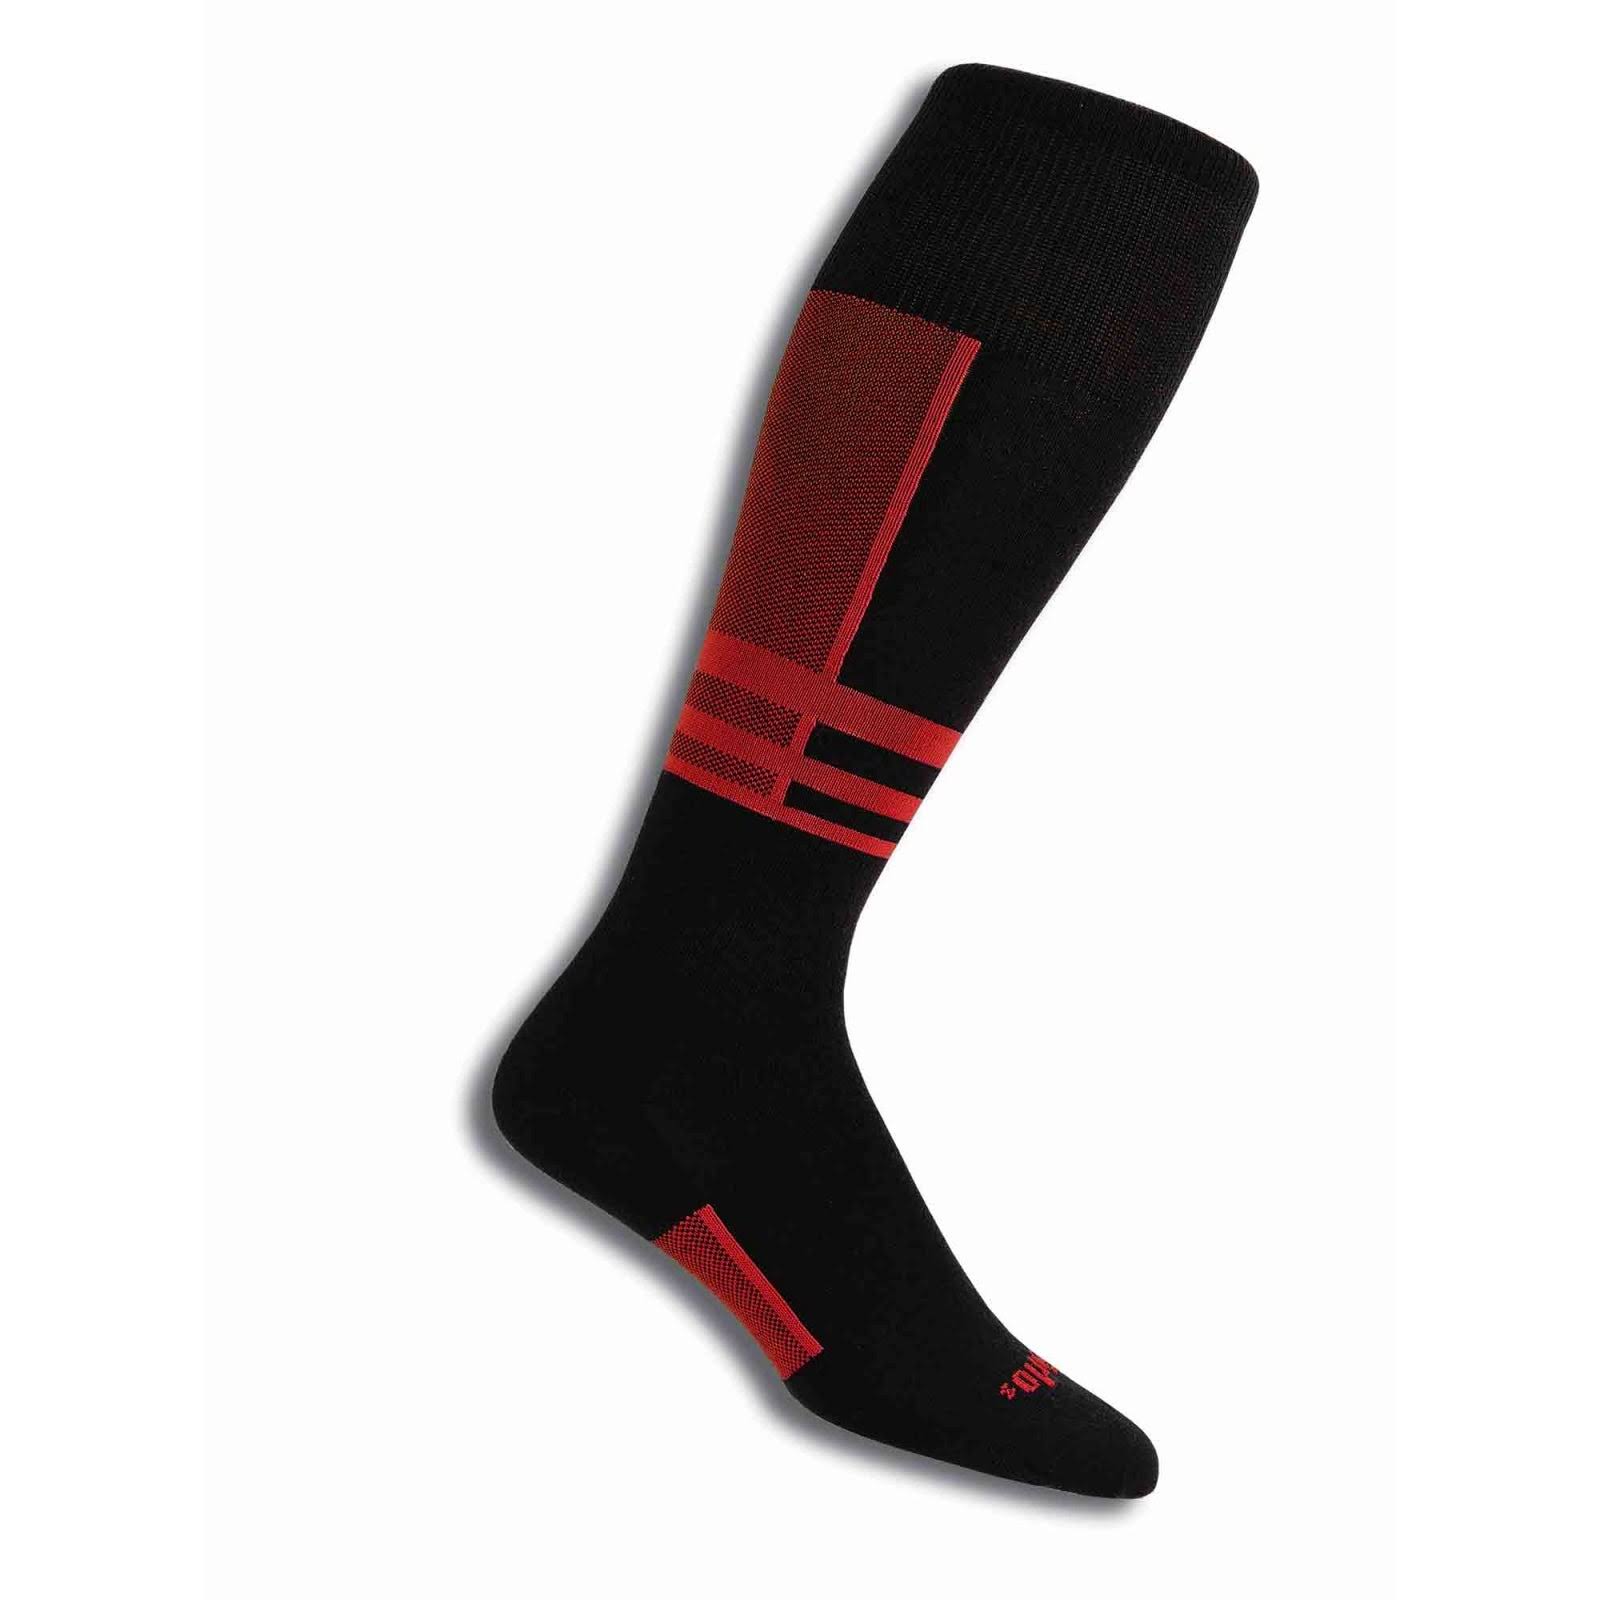 Thorlo Ultra Light Ski Liner Sock - AW18 Black/Red UK 10-11